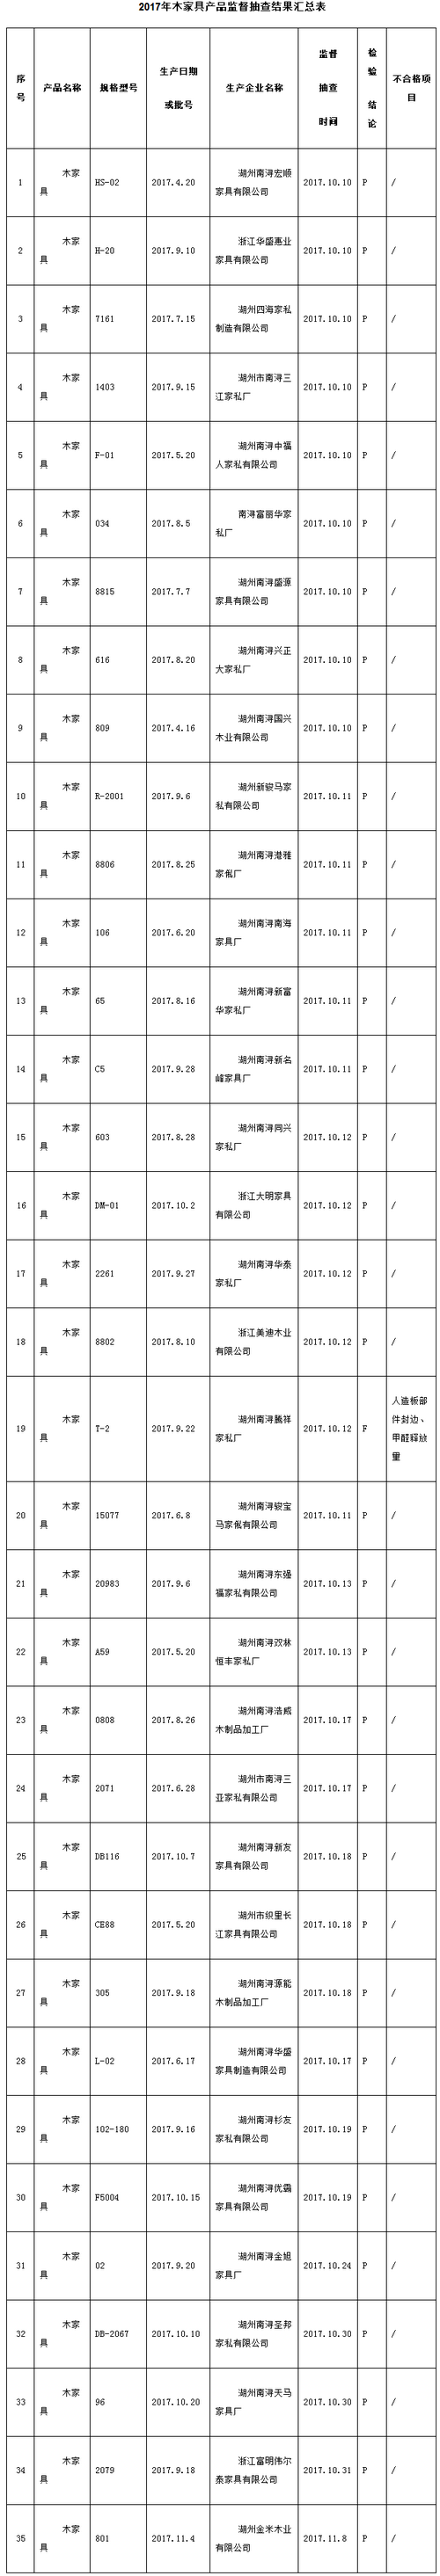 浙江湖州木家具产品质量抽查 合格率达97.1%